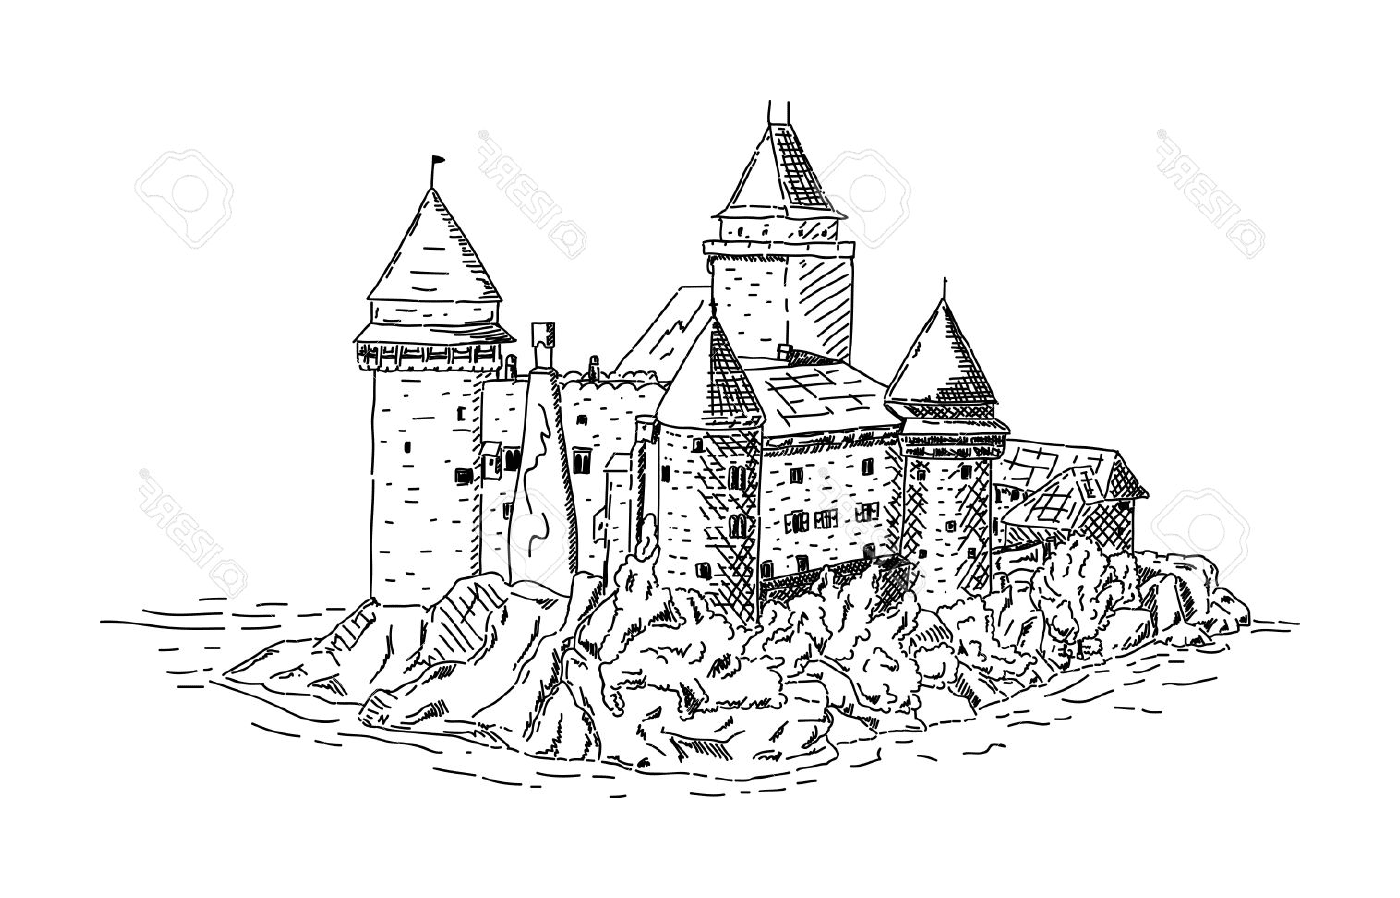  Eine mittelalterliche Burg in der Nähe des Meeres 